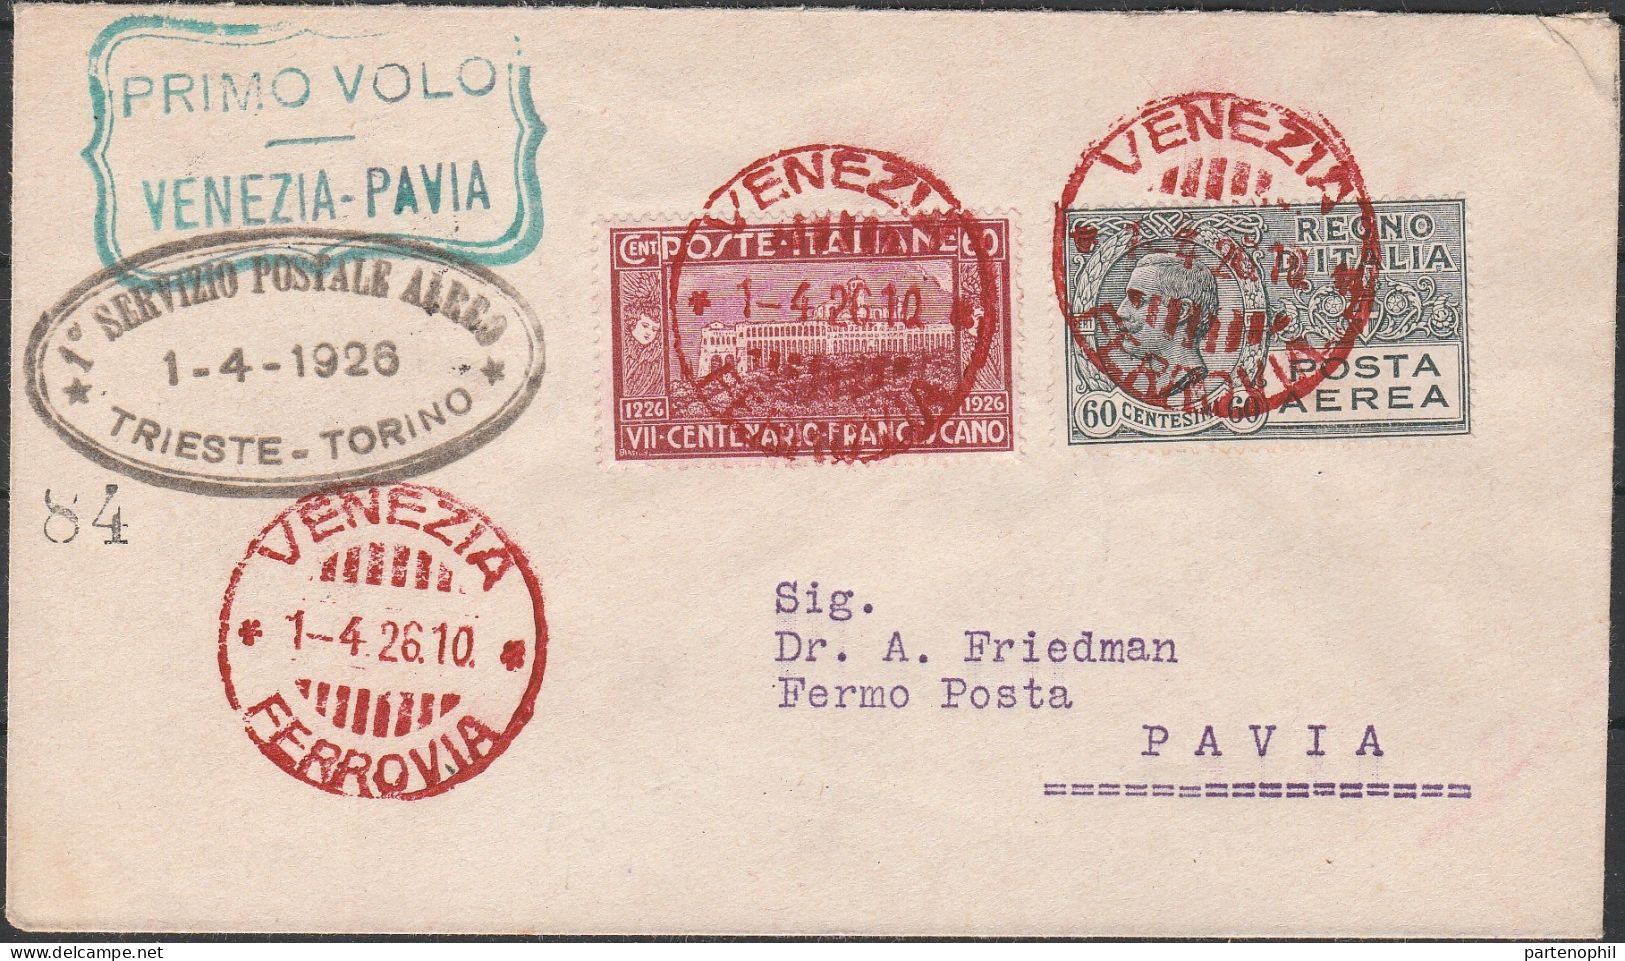 97 - Posta Aerea - Linea Aerea Commerciale Venezia-Pavia Del 1.4.1926, Con Annullo Di Arrivo Al Verso Su Segnatasse Da 3 - Poststempel (Flugzeuge)